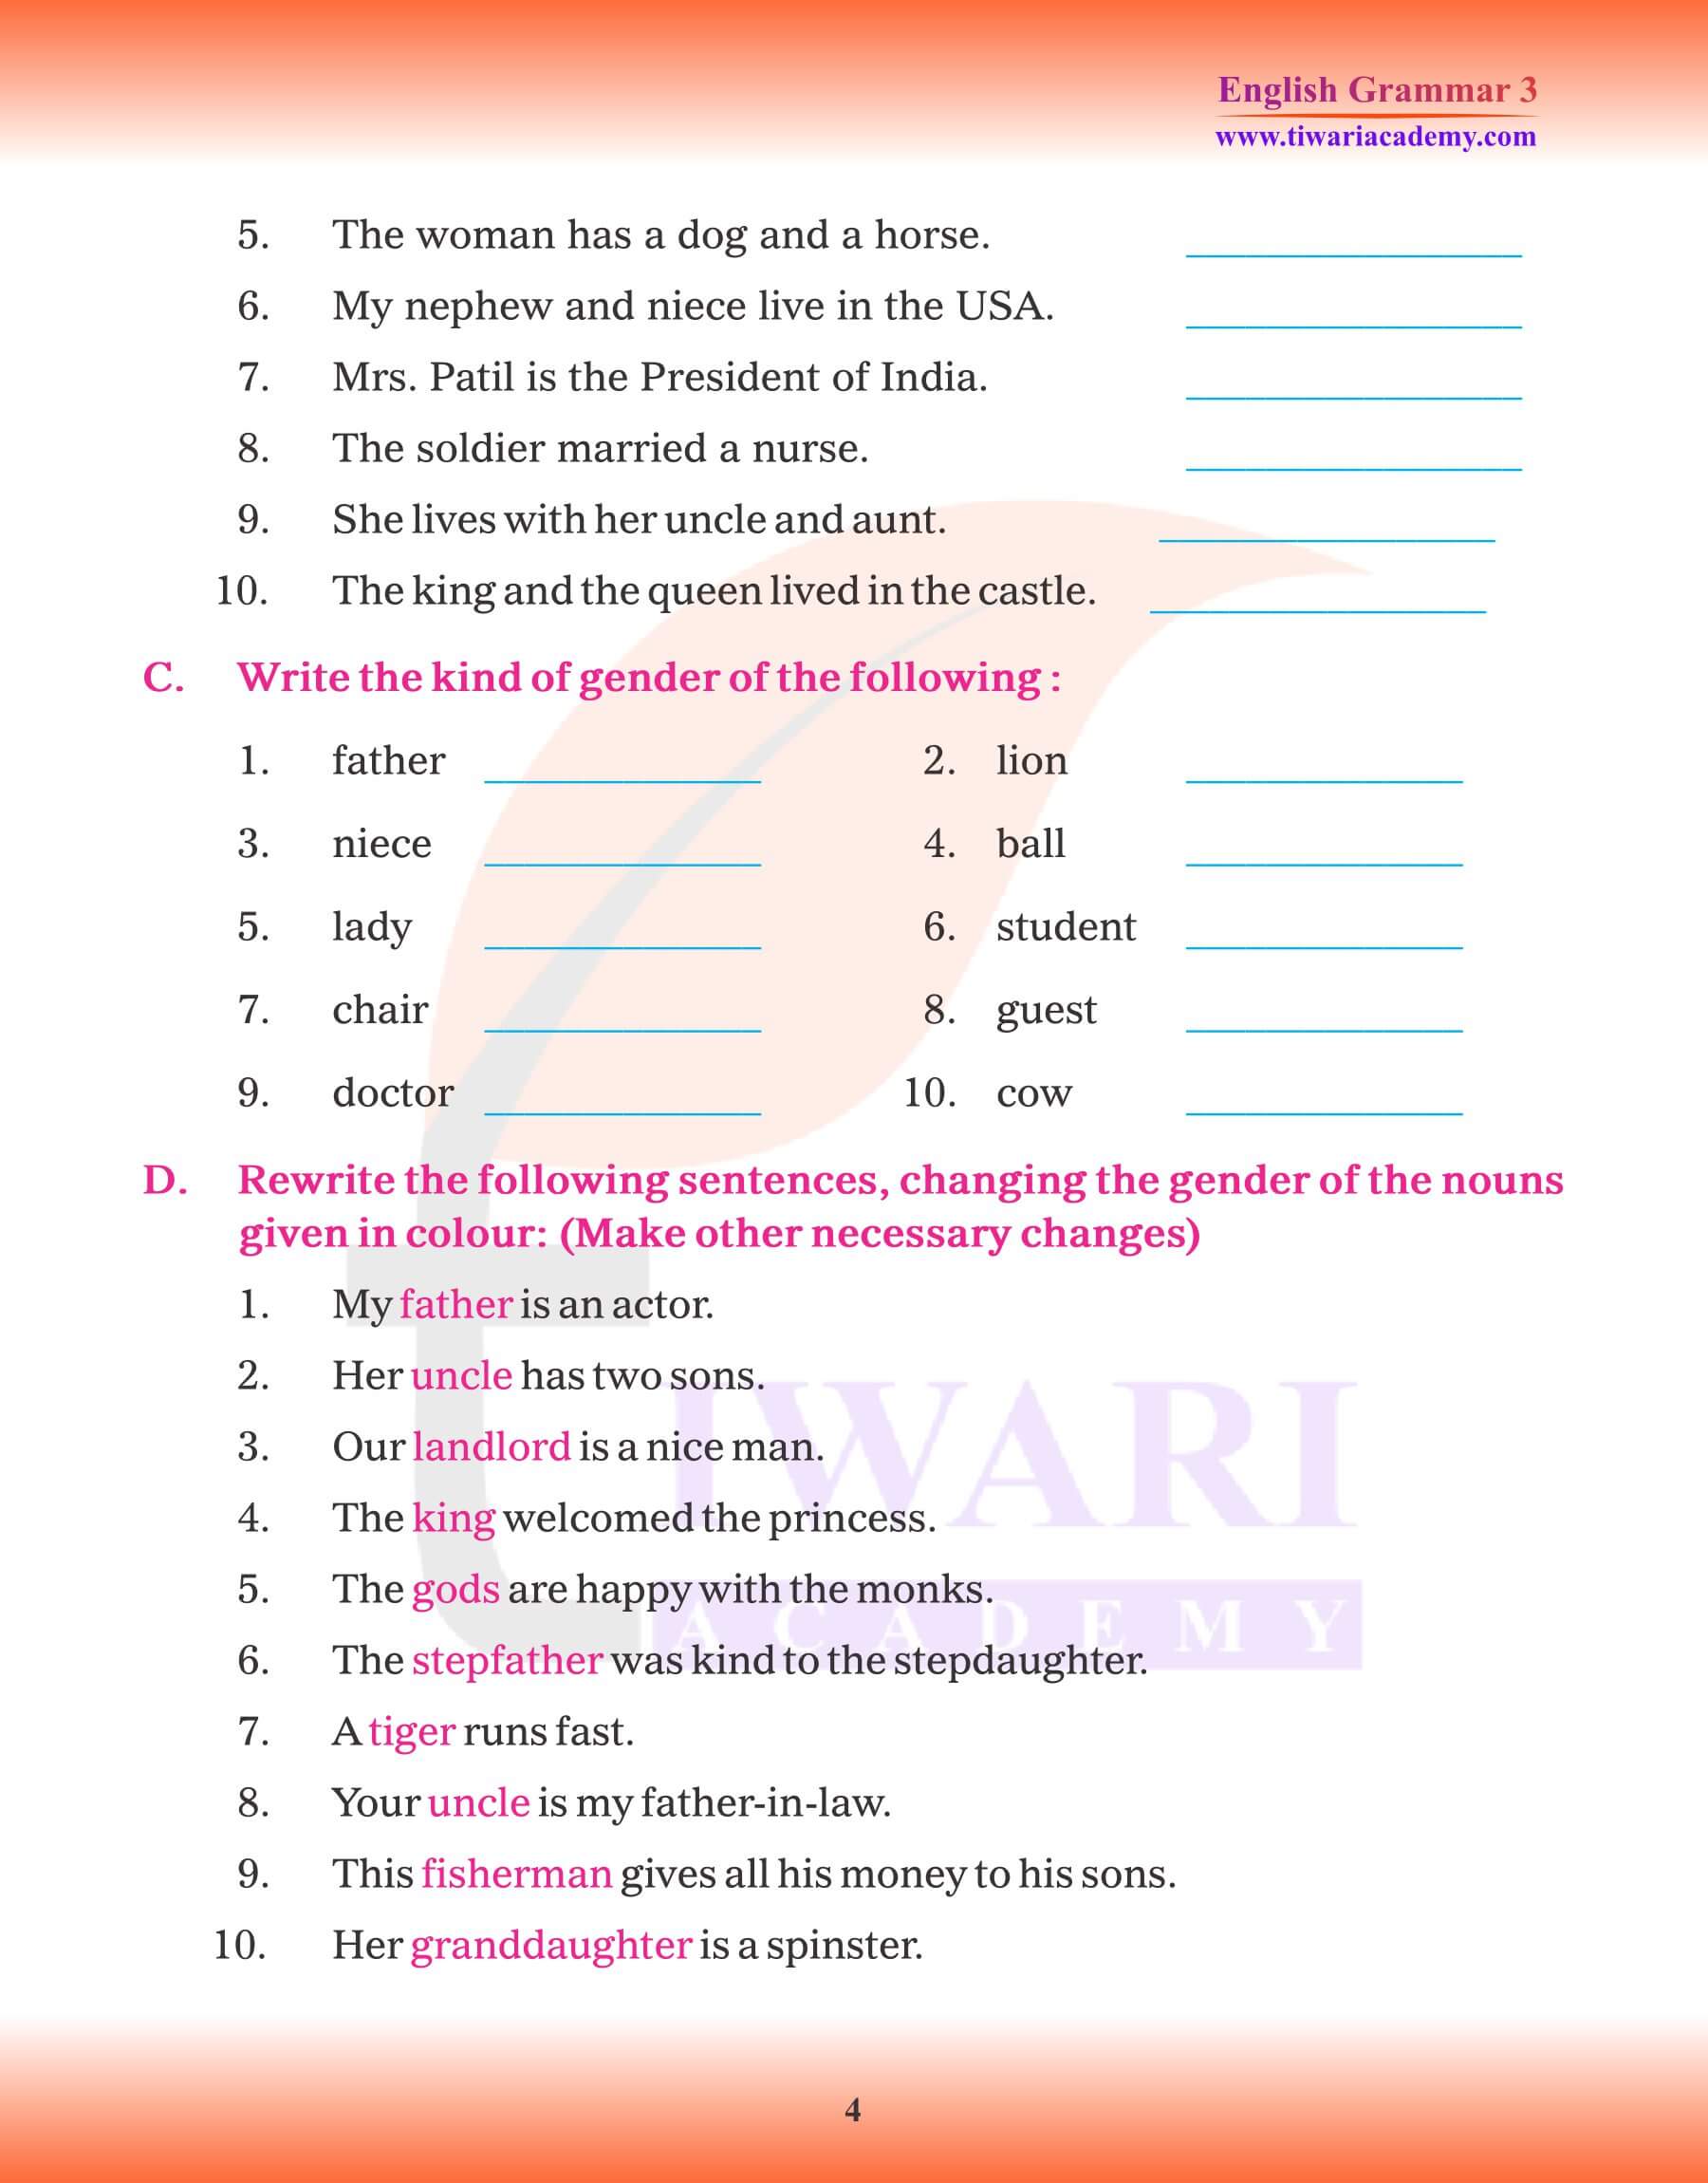 Class 3 Grammar Chapter 6 Noun Gender